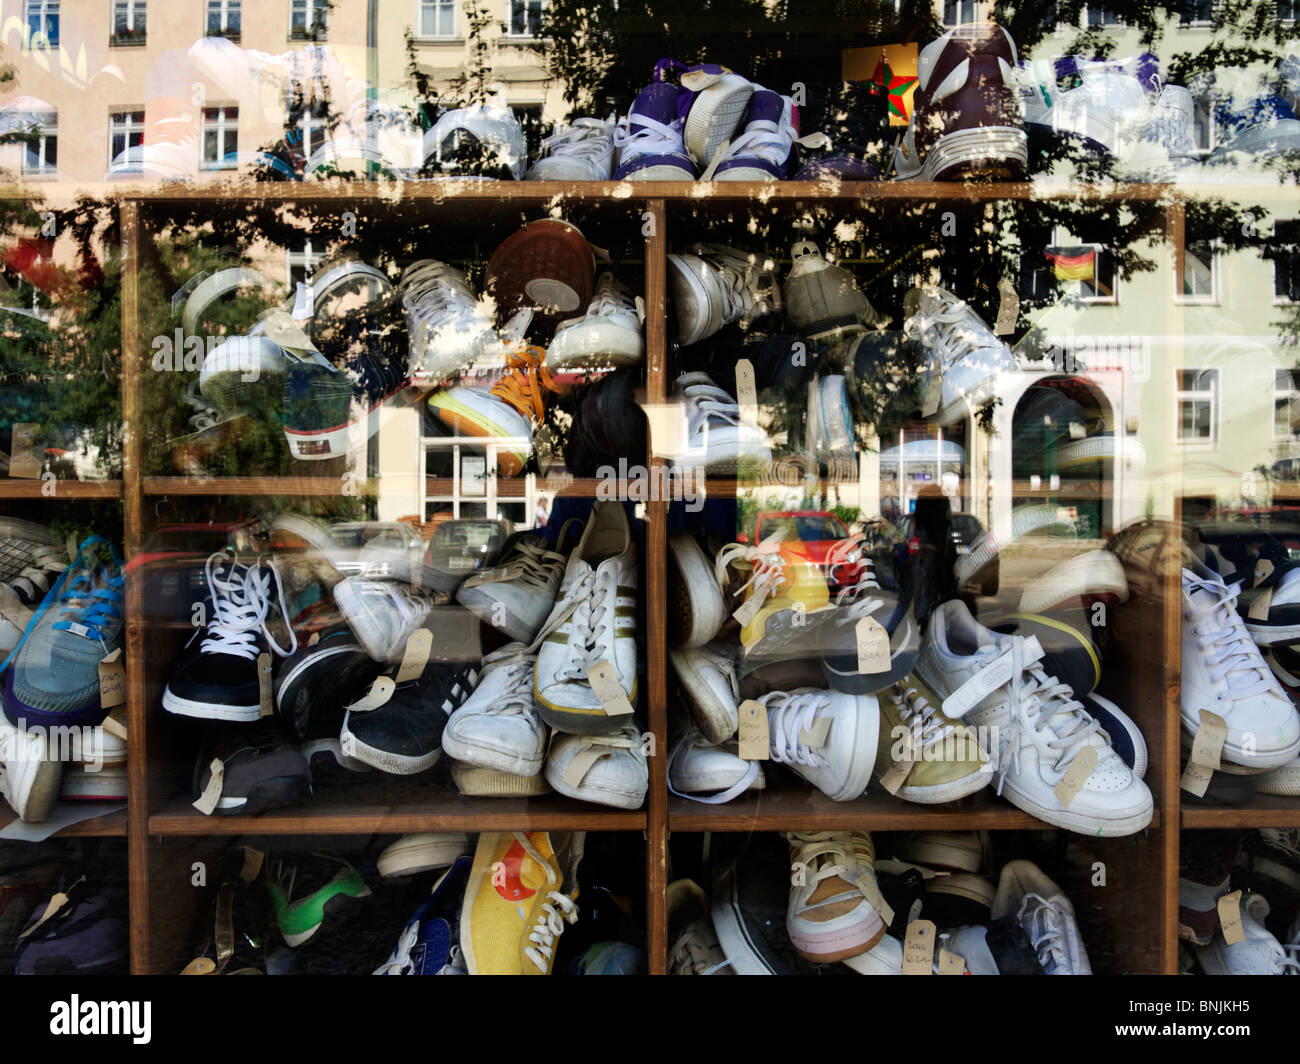 Sneakers inside a shop window in Berlin, Germany Stock Photo - Alamy